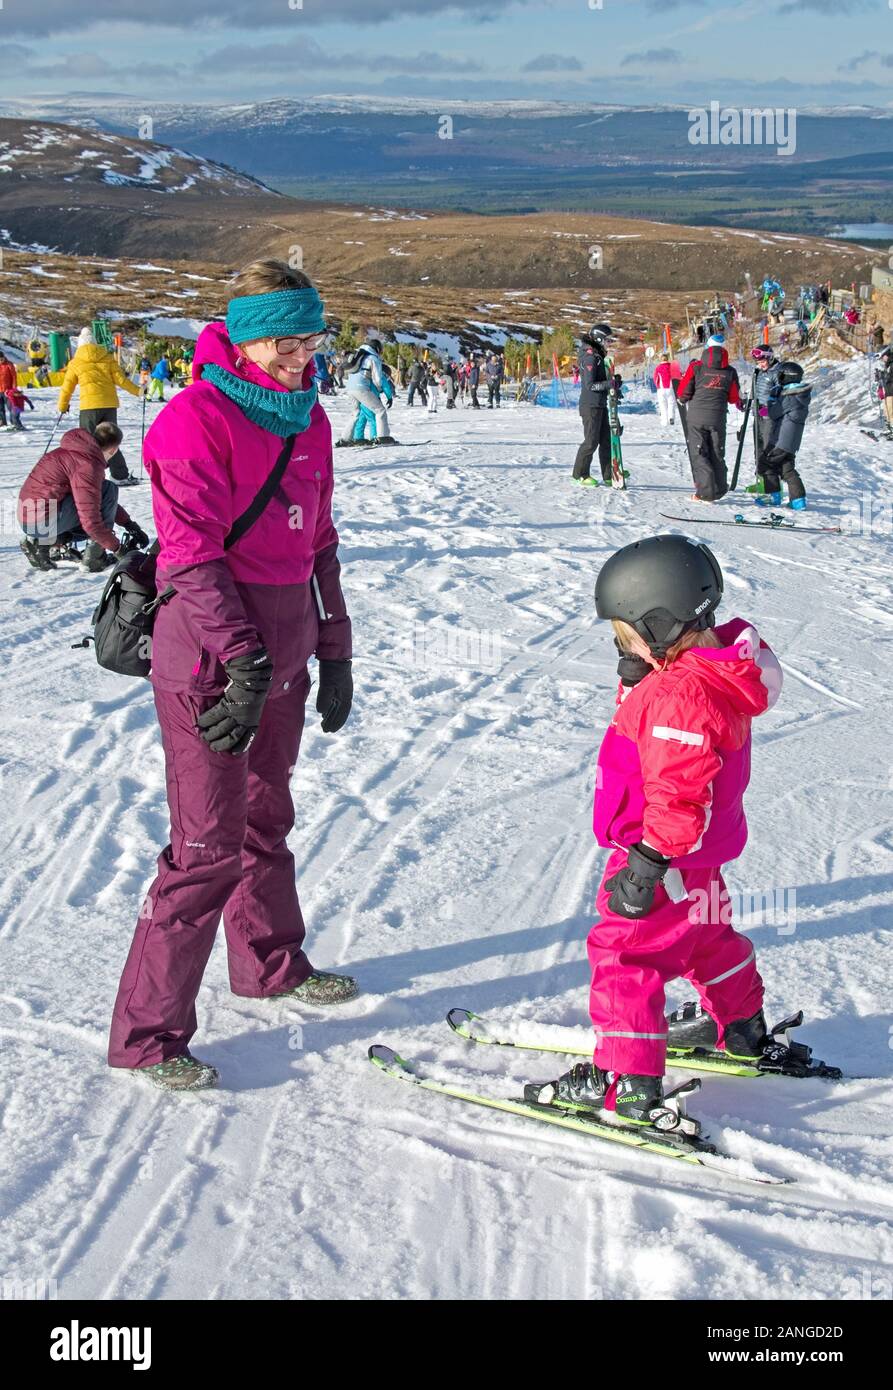 Fröhliche lächelnde Mutter, die kleine Mädchen auf Skiern betrachtet, Cairngorm Mountain Ski Center, Cairngorms National Park, Scottish Highlands, in der Nähe von Aviemore, Großbritannien Stockfoto